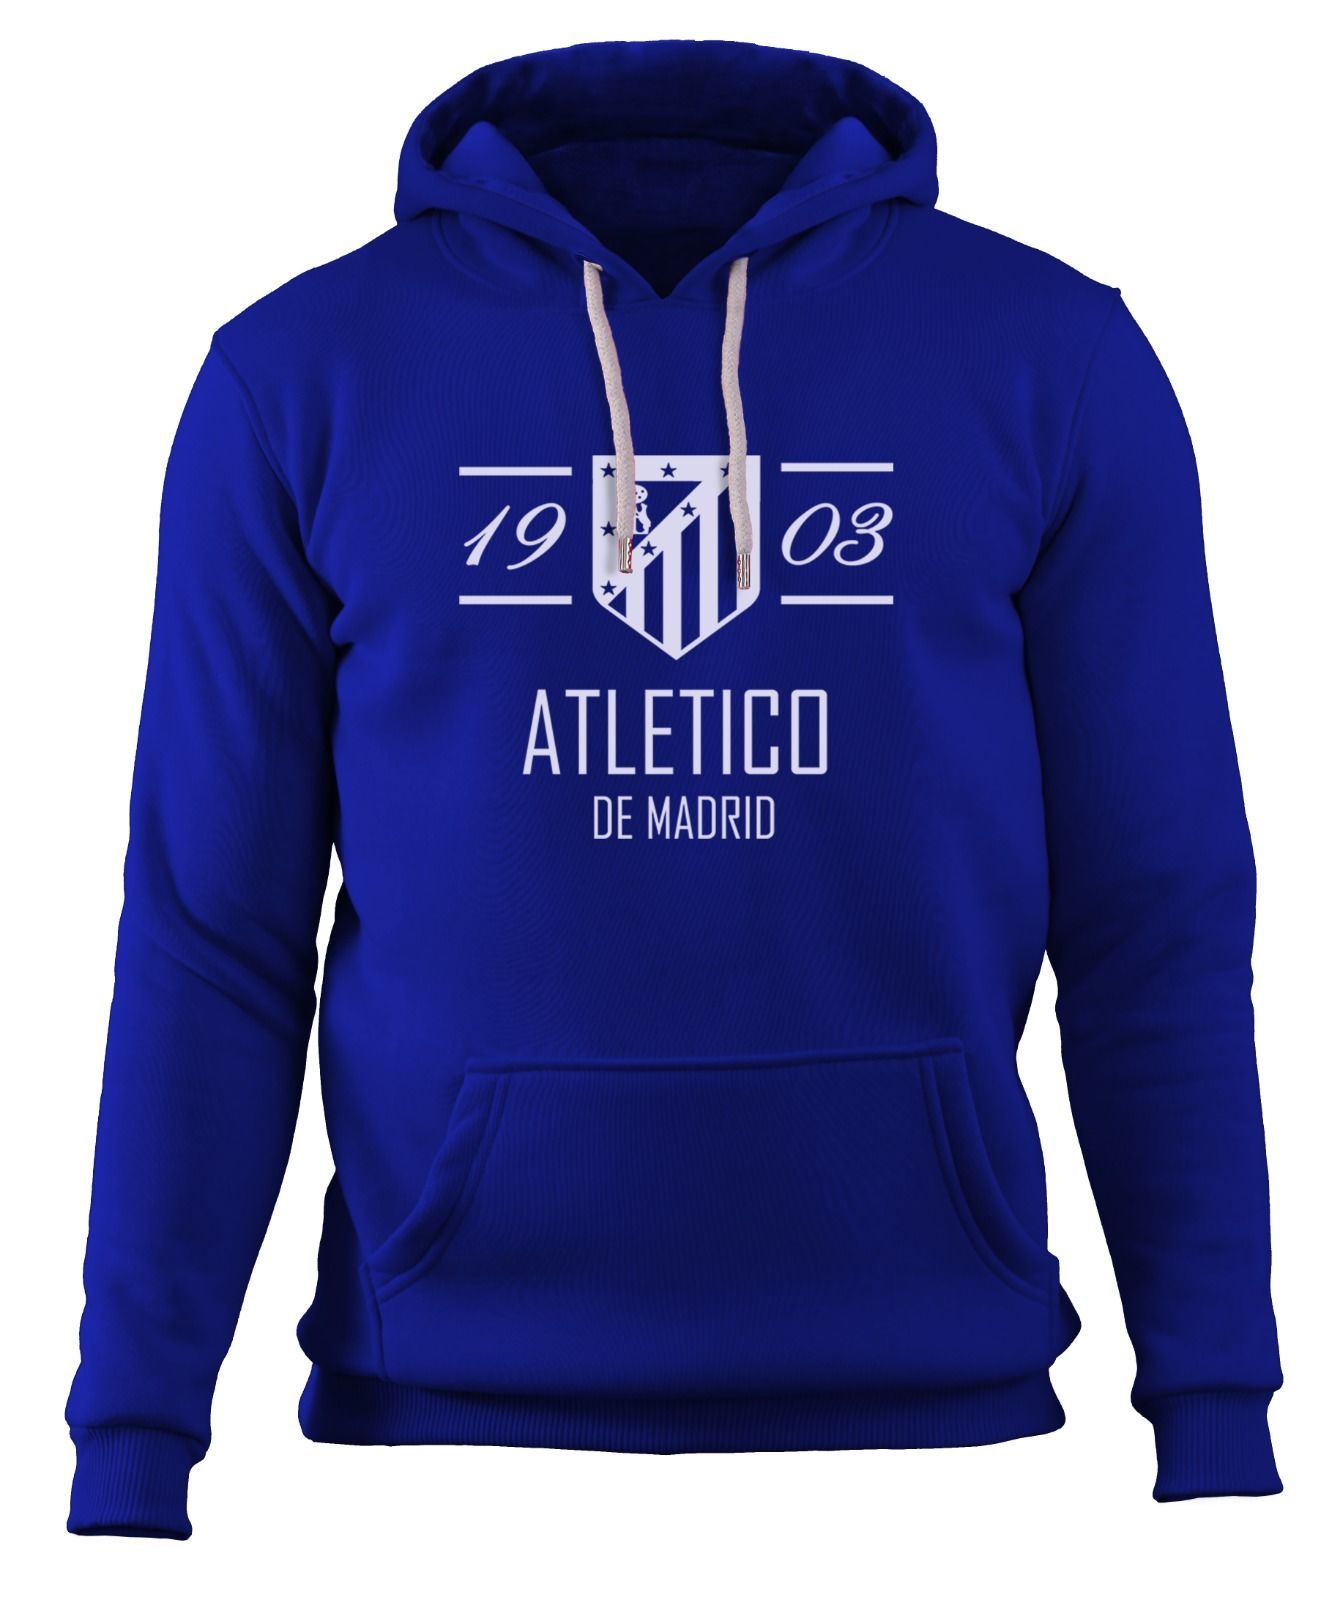 Atletico 1903 - Sweatshirt